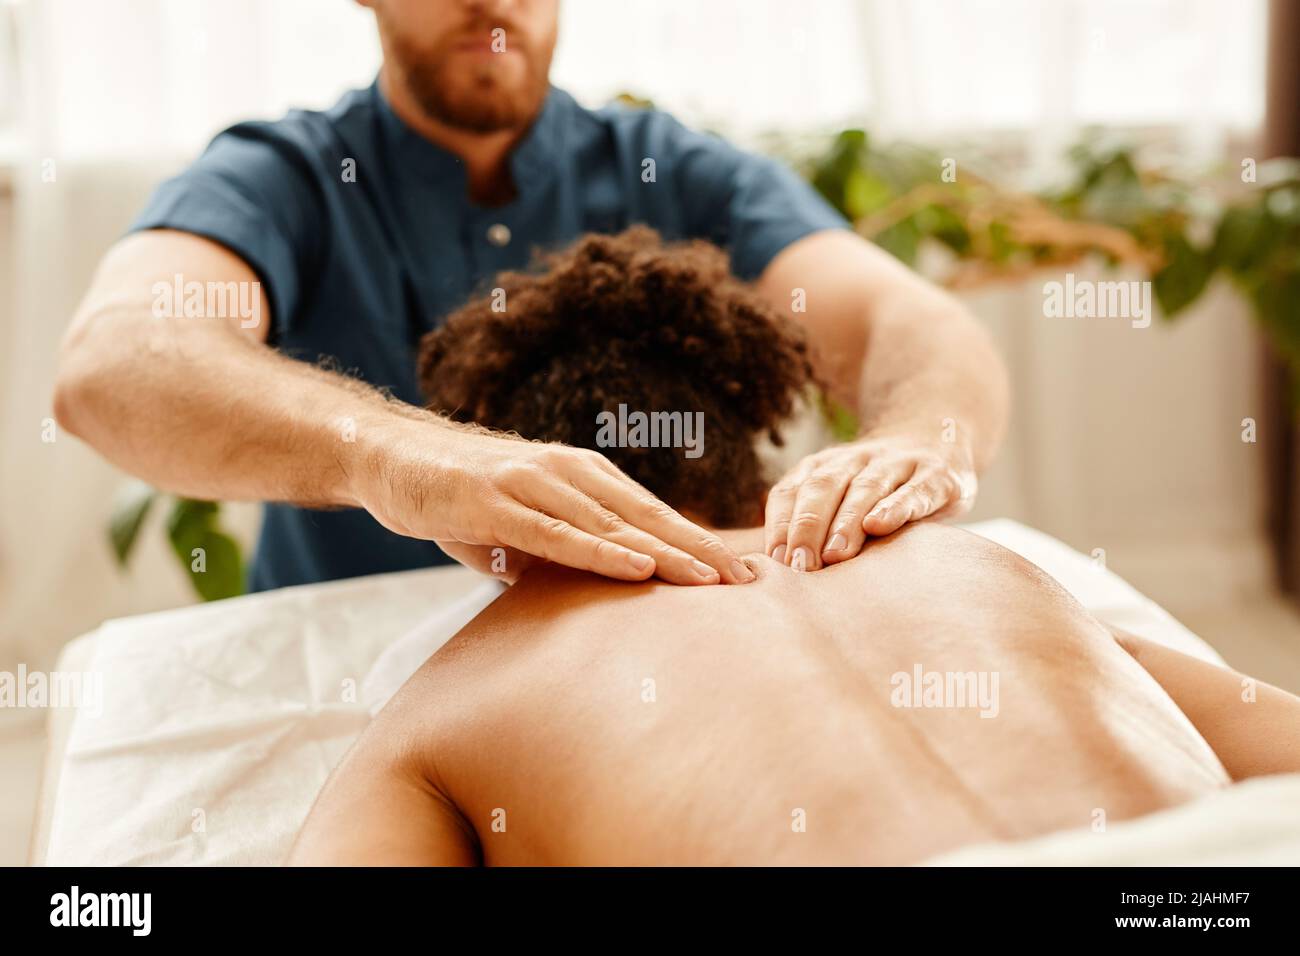 Tonos cálidos el primer plano del hombre masajea la espalda y los hombros  de una mujer joven que disfruta de una sesión de SPA Fotografía de stock -  Alamy